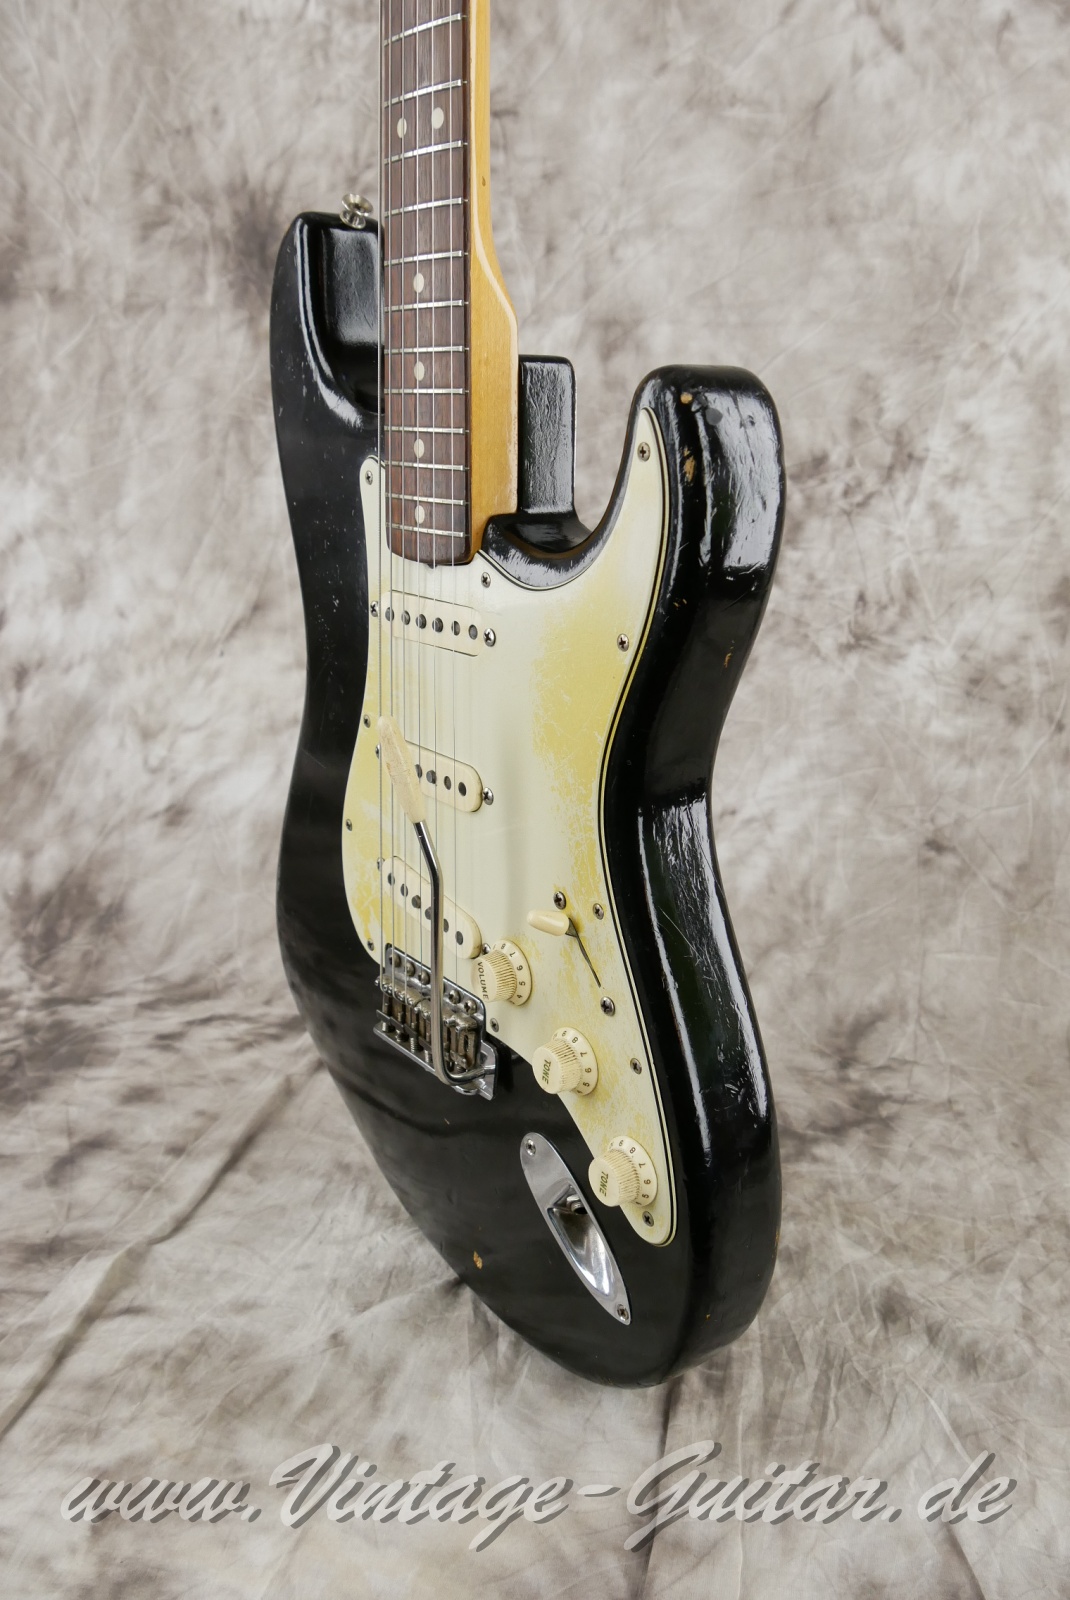 Fender-Stratocaster-1964-body-with-1969-neck-black-010.jpg